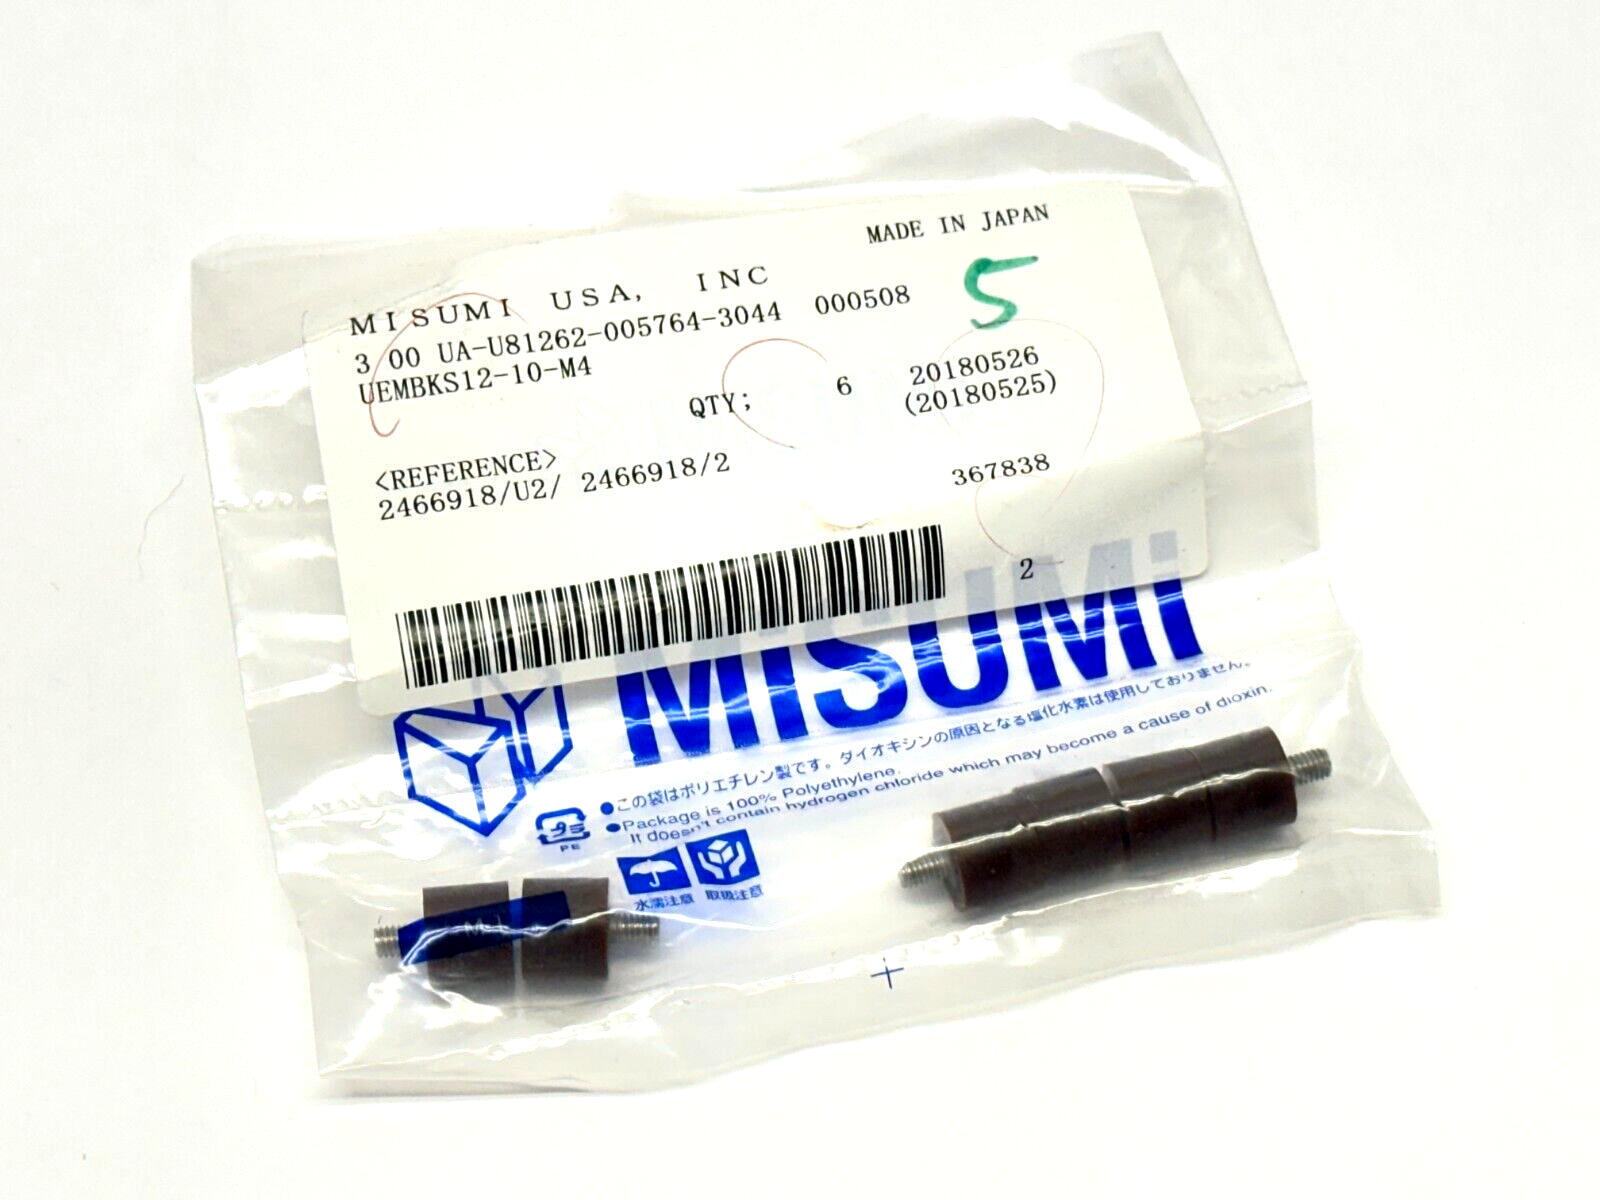 Misumi UEMBKS12-10-M4 Urethane Threaded Bumper M4 10mm Length 12mm Dia PKG OF 6